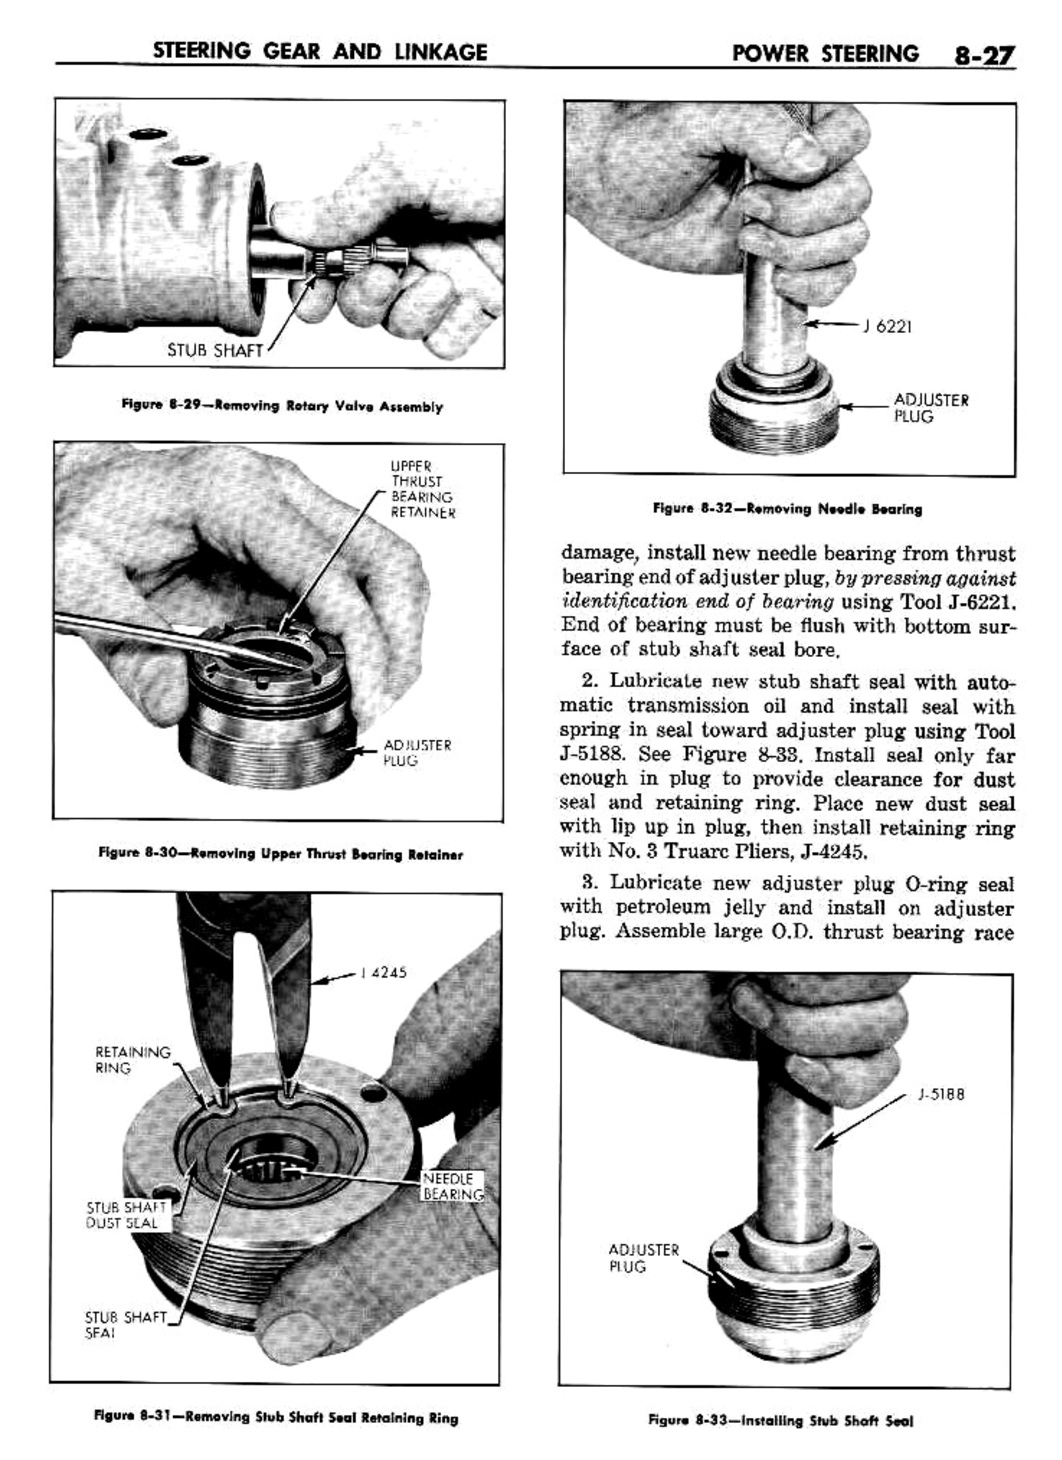 n_09 1960 Buick Shop Manual - Steering-027-027.jpg